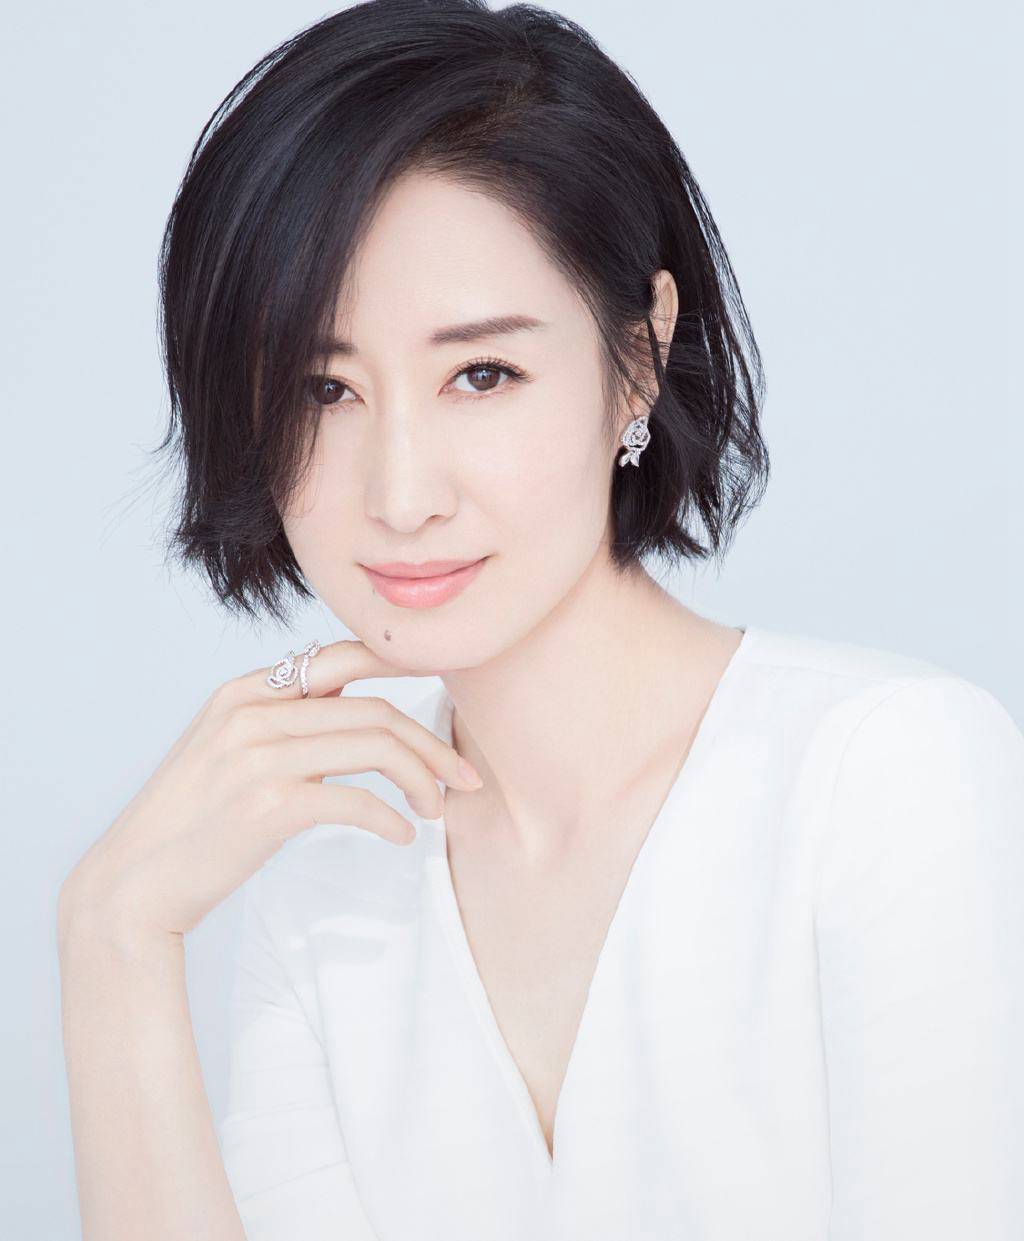 刘敏涛女明星,1976年5月29日出生于上海市虹口区,2000年出演了《黑洞